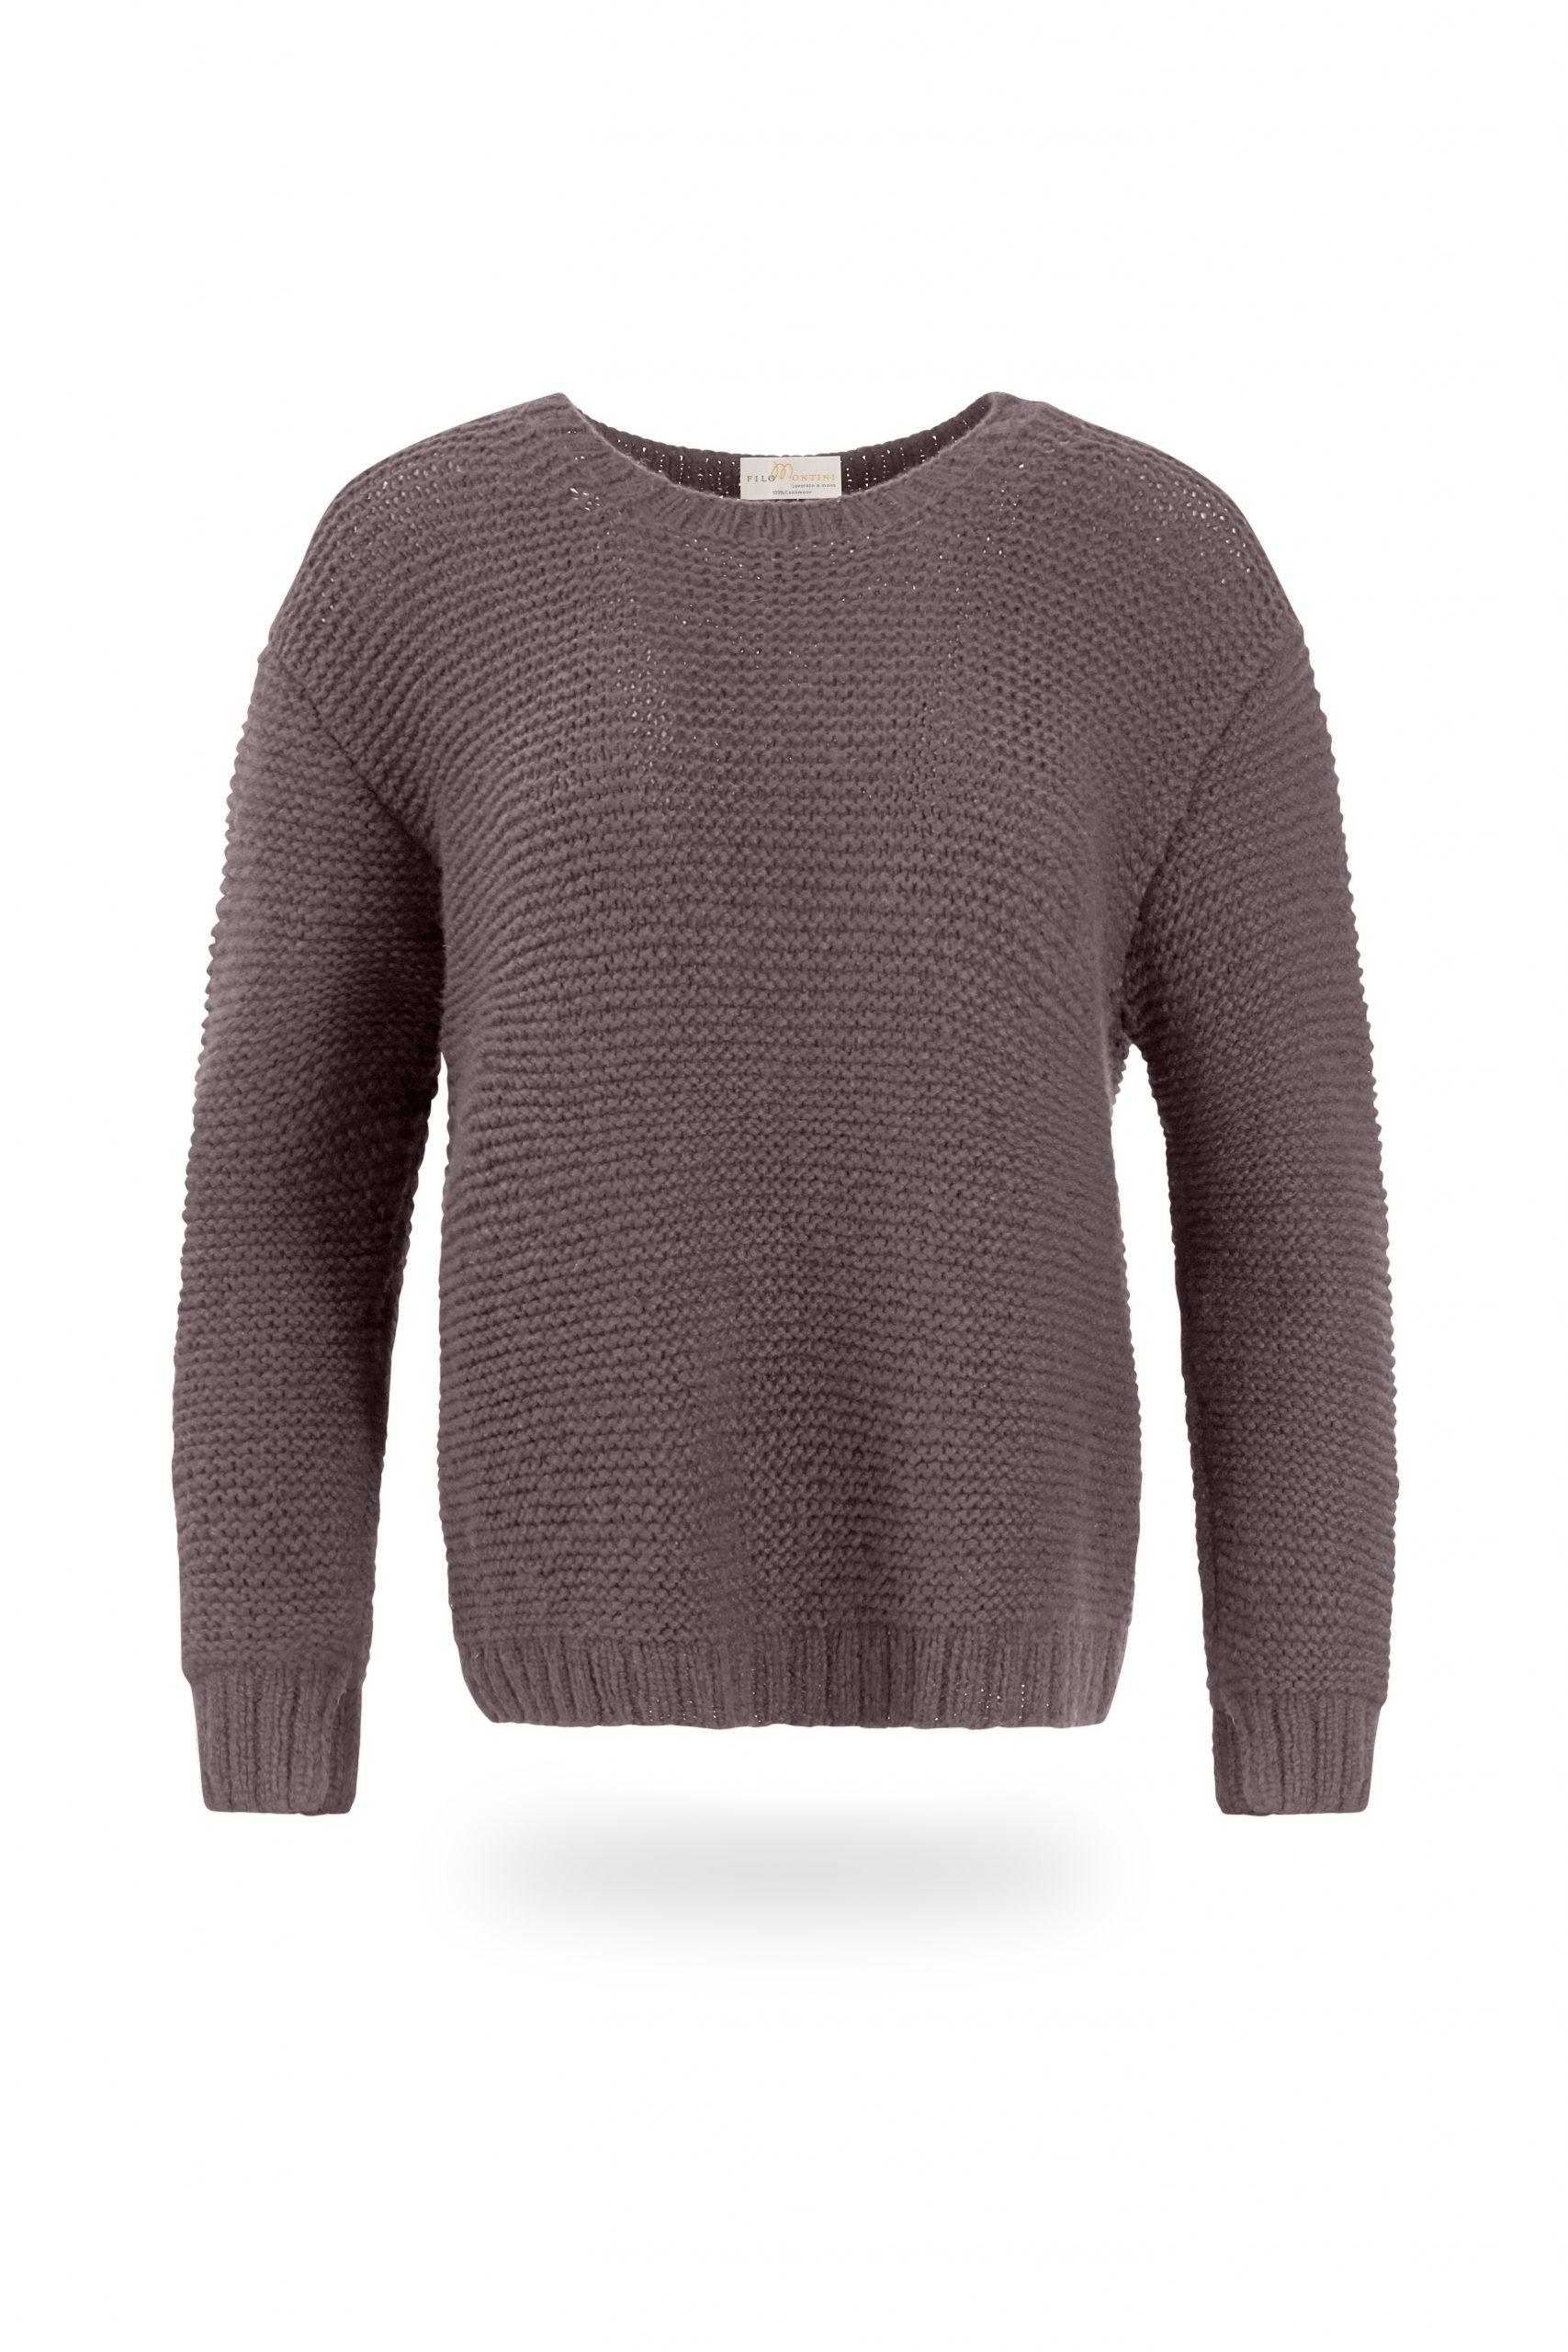 Sabina100 Filomontini Rundhalsausschnitt Cashmere Pullover – knitted % mit Hand